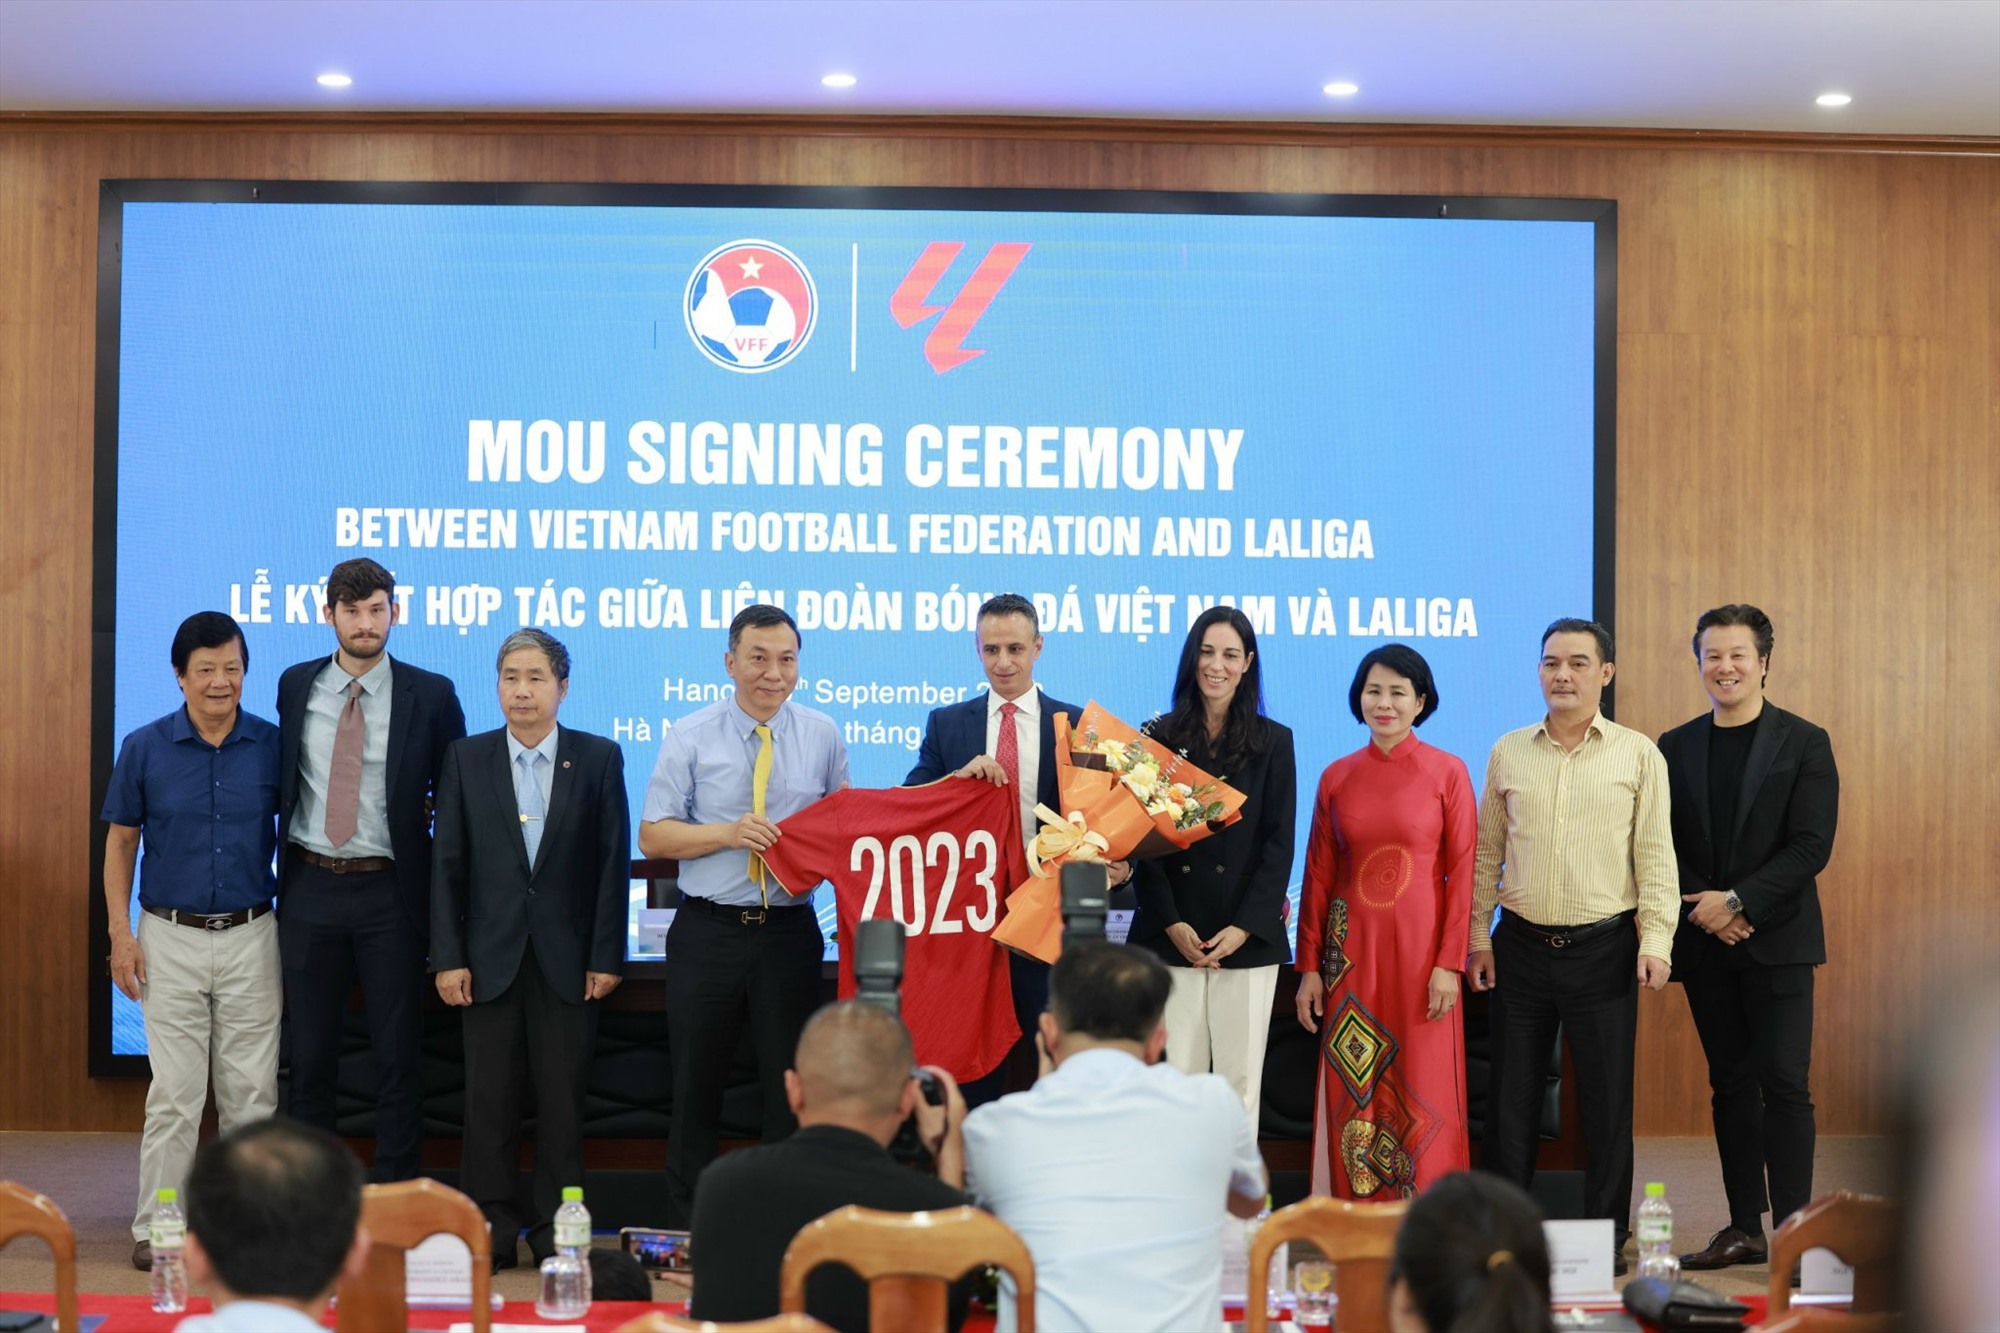 Chủ tịch VFF Trần Quốc Tuấn tặng áo đấu cho đại diện La Liga. Ảnh: Minh Phương